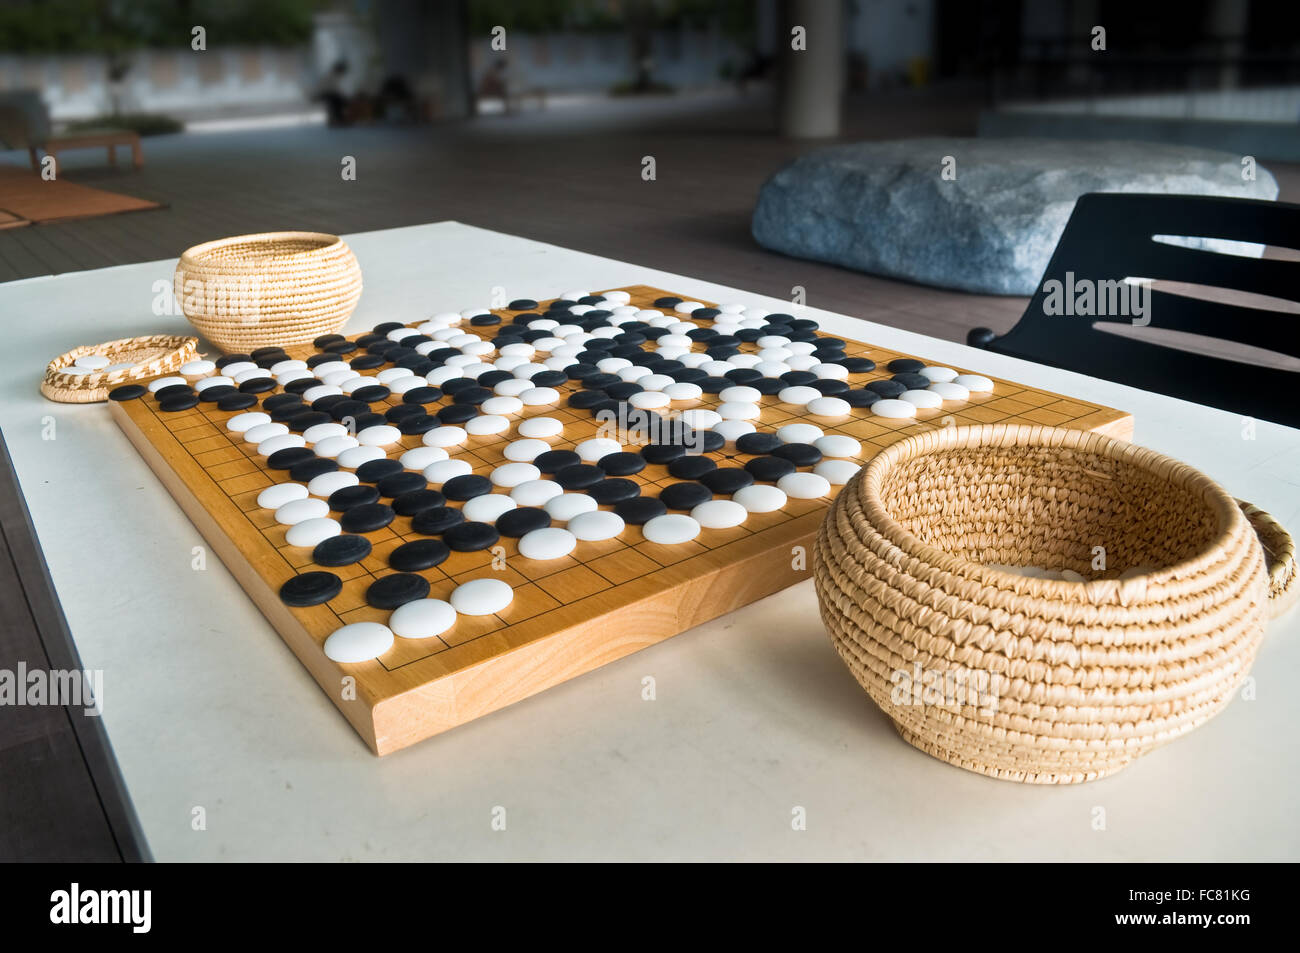 Endete Go-Spiel auf Holzbrett mit chinesischen Stil gespielt Stein Stücke, Steinen mit Kurve auf der einen Seite und auf der anderen Seite flach. Stockfoto